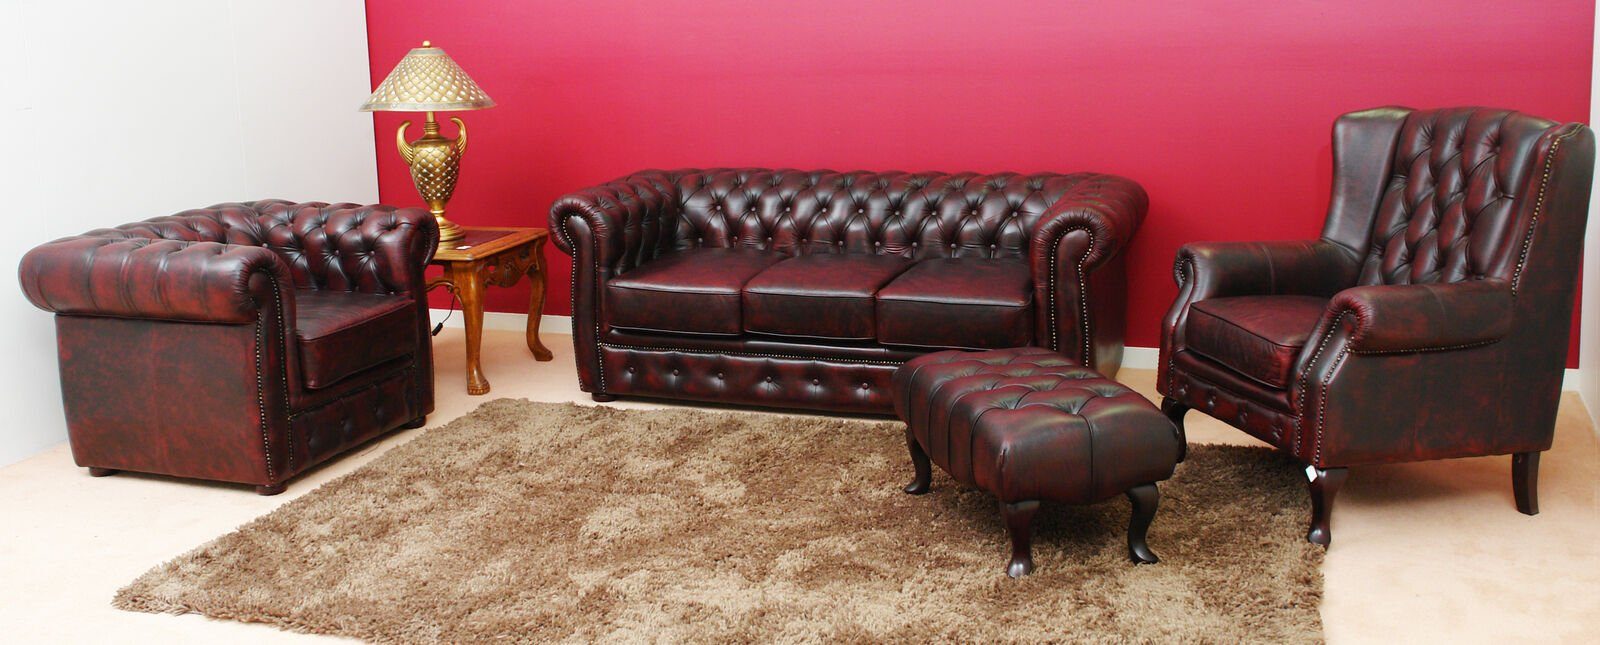 JVmoebel Sofa Vintage Sofagarnitur Ledersofa Chesterfield 3+1 + Ohrensessel Hocker, Made in Europe